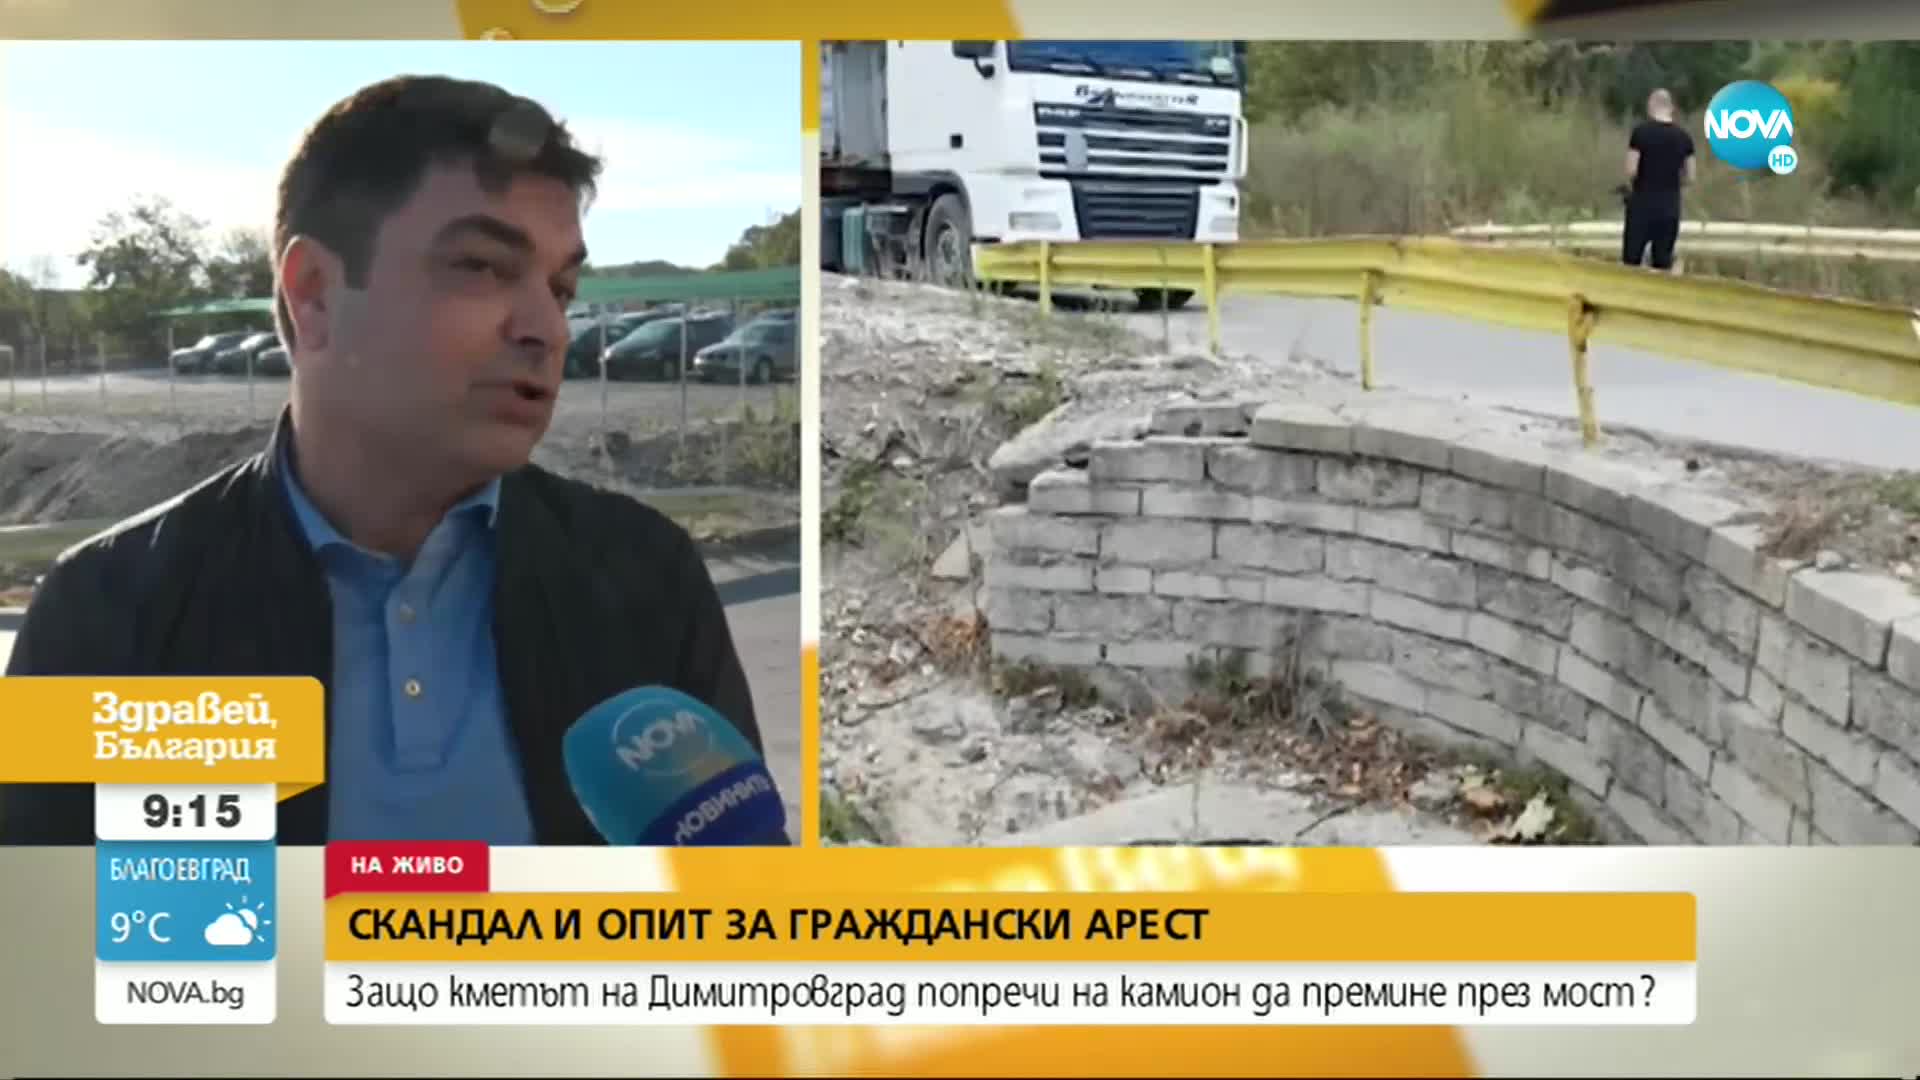 Защо кметът на Димитровград попречи на камион да премине през мост